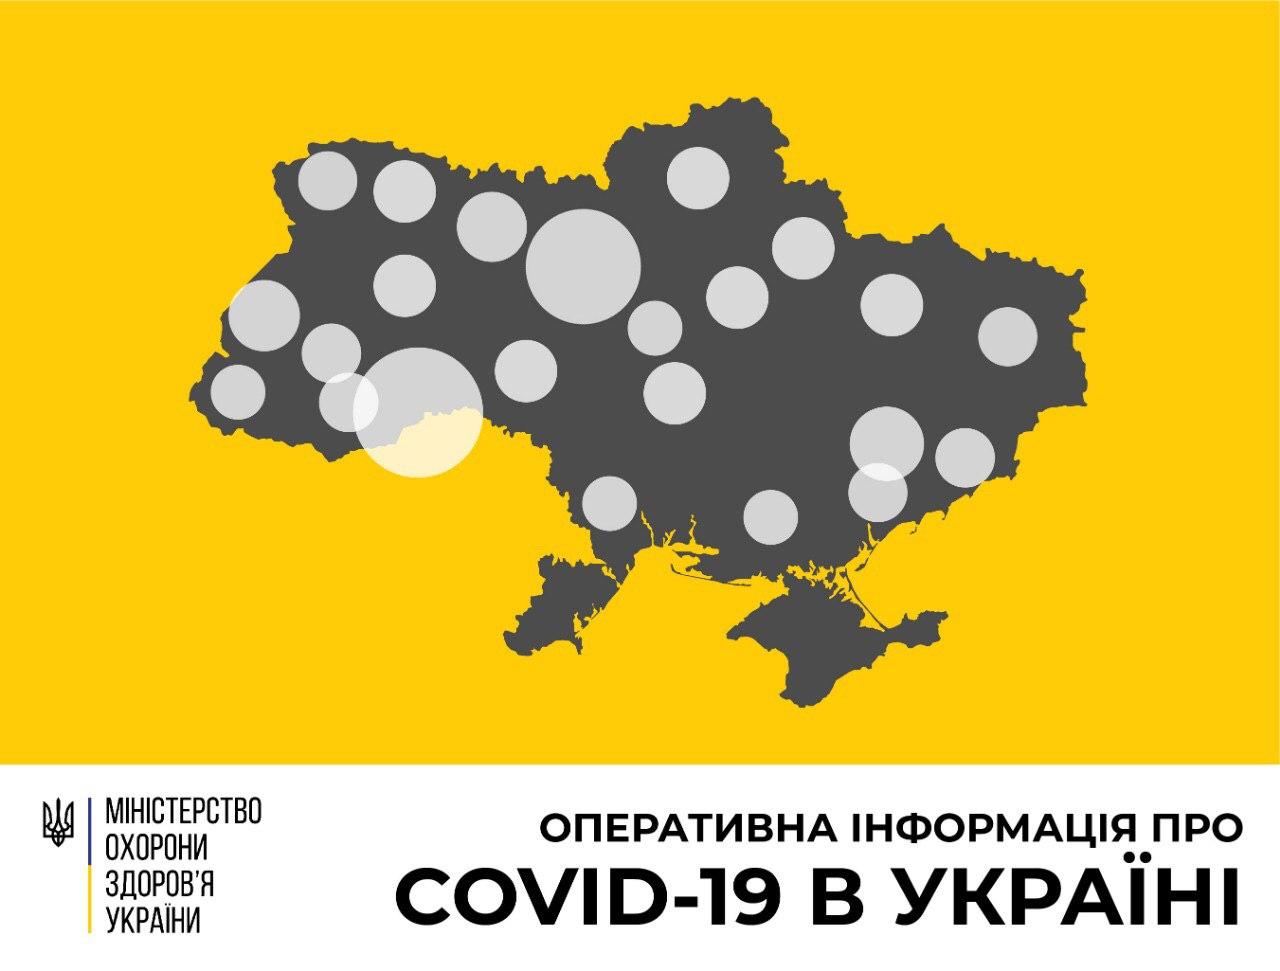 В Україні зафіксовано 1462 випадки коронавірусної хвороби COVID-19, - МОЗ